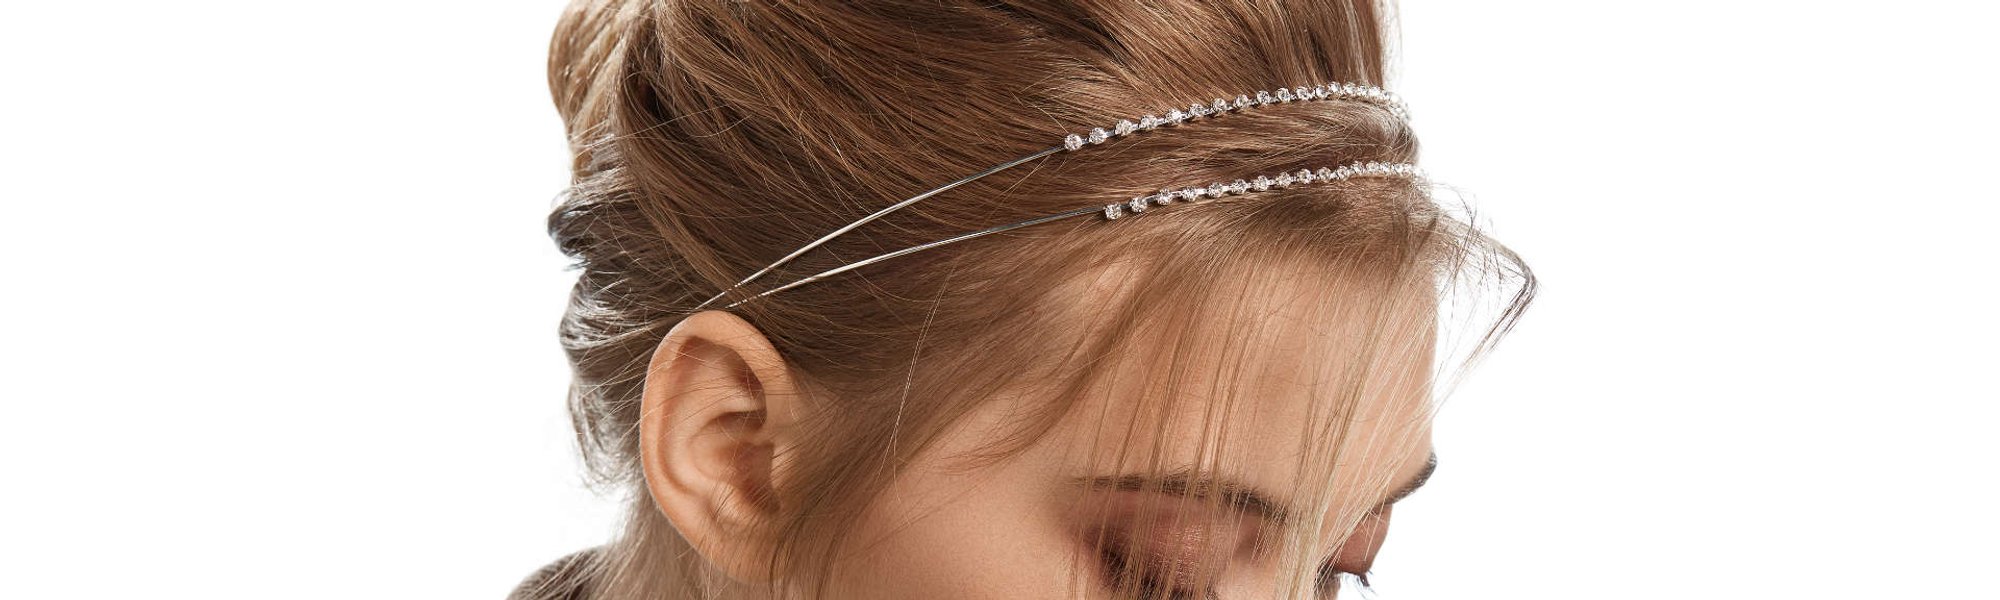 Coque baixo para festas: penteado mais bonito com uma tiara ou com um laço|  L'Oréal Paris